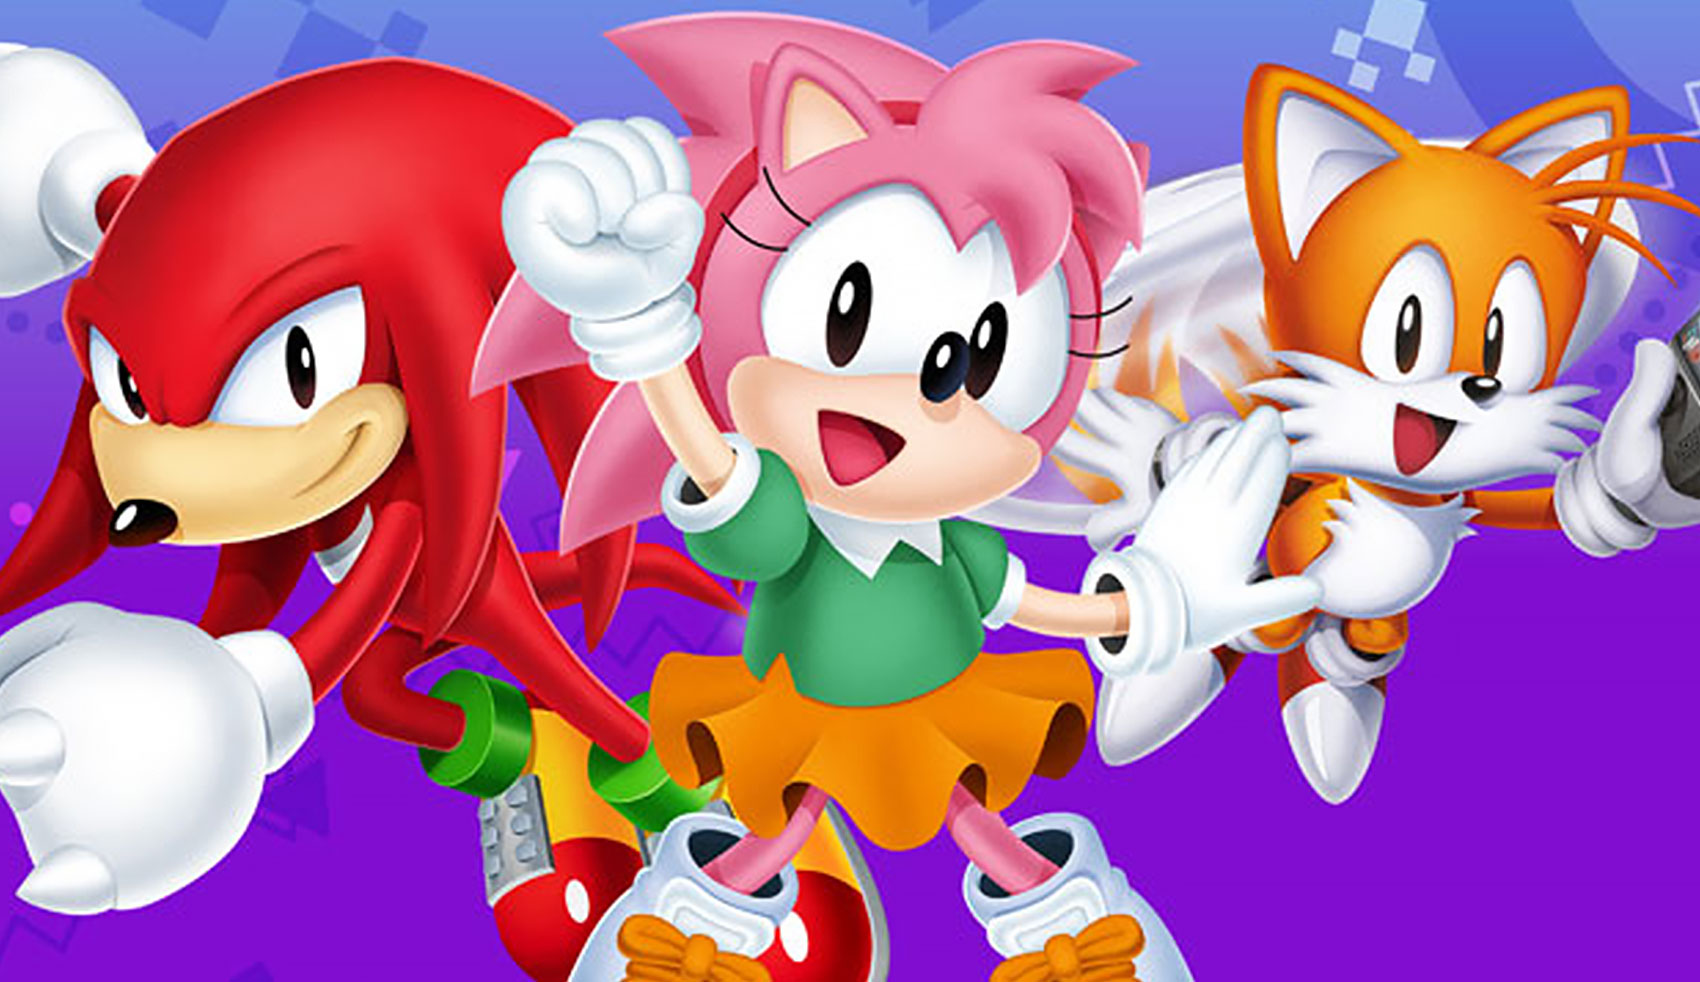 Sonic Origins Plus: coletânea pode ser lançada em junho com 12